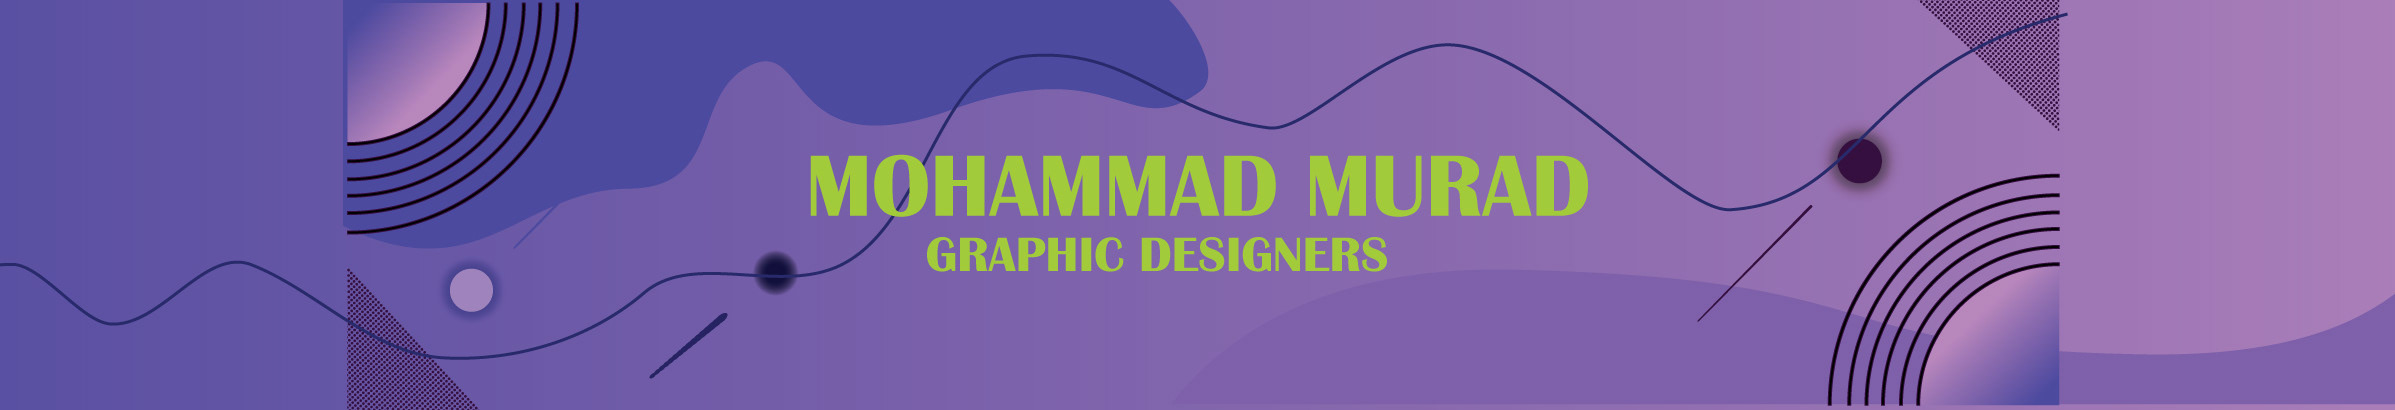 Bannière de profil de Mohammad Murad